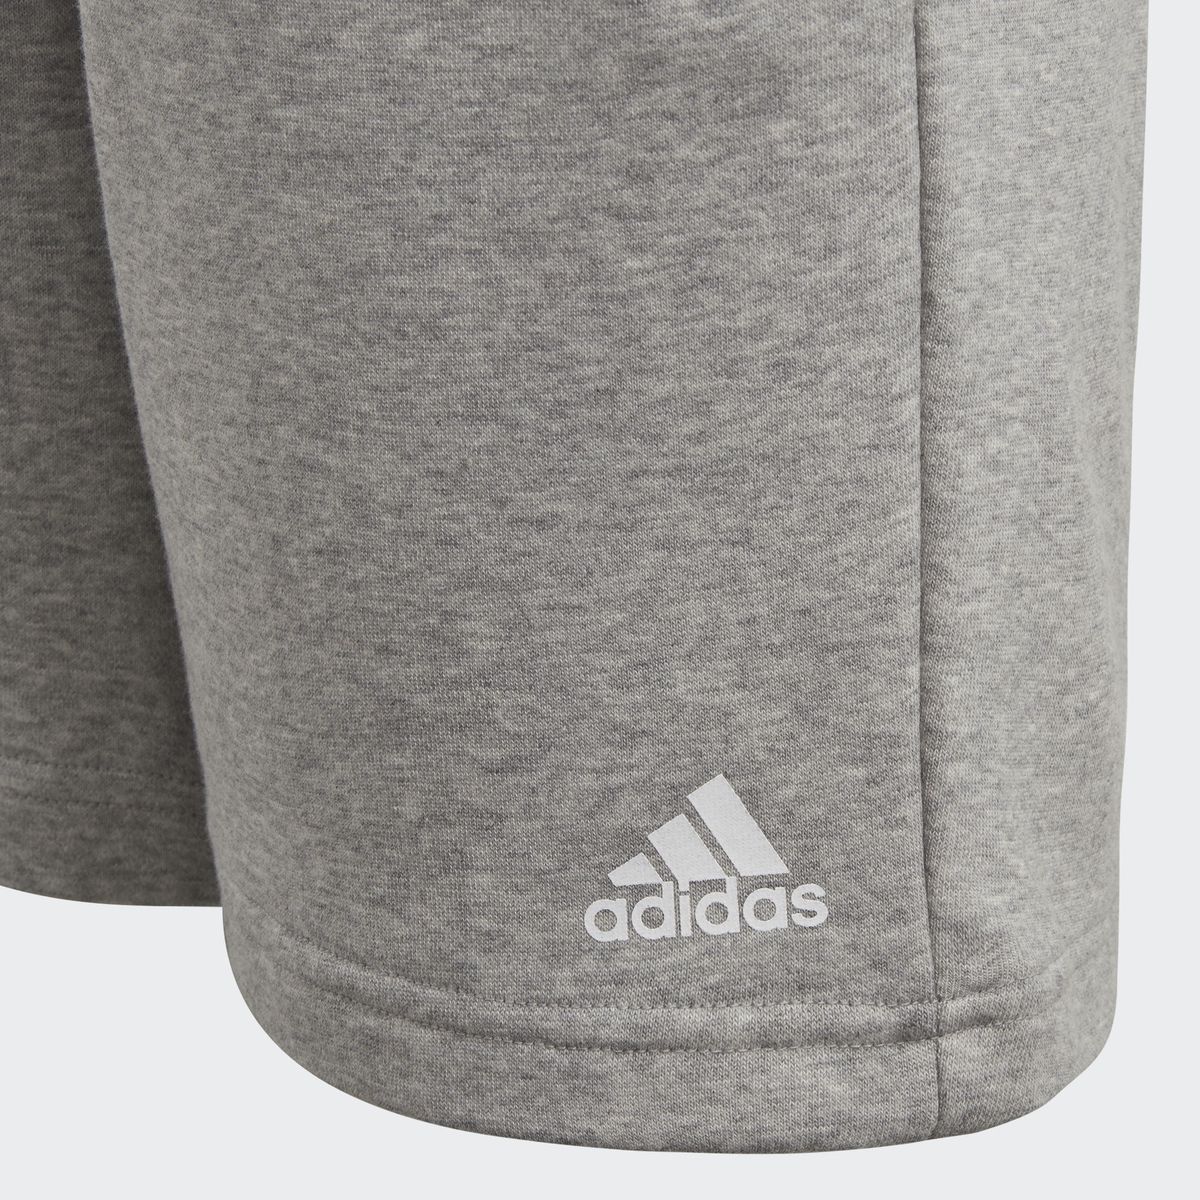    Adidas Yb Logo Short, : . CF6534.  134